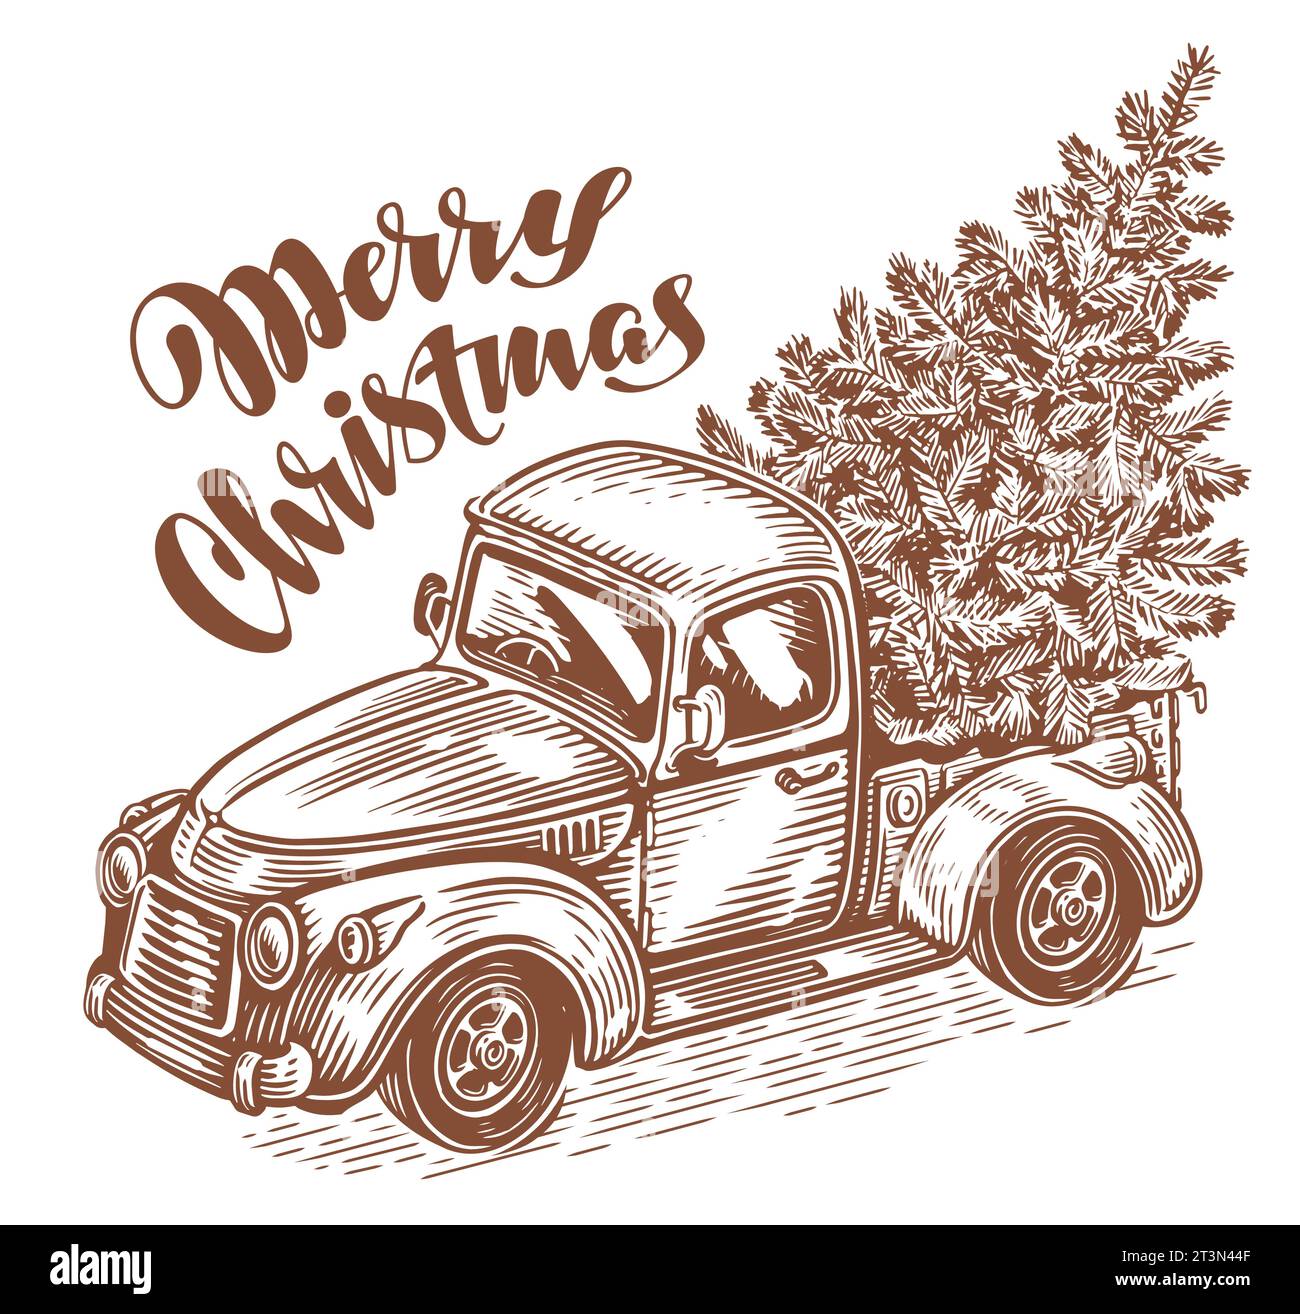 Handgezeichneter Retro-Truck und Weihnachtsbaum auf der Rückseite eines Autos. Happy Holidays Skizze Vektor Illustration Stock Vektor